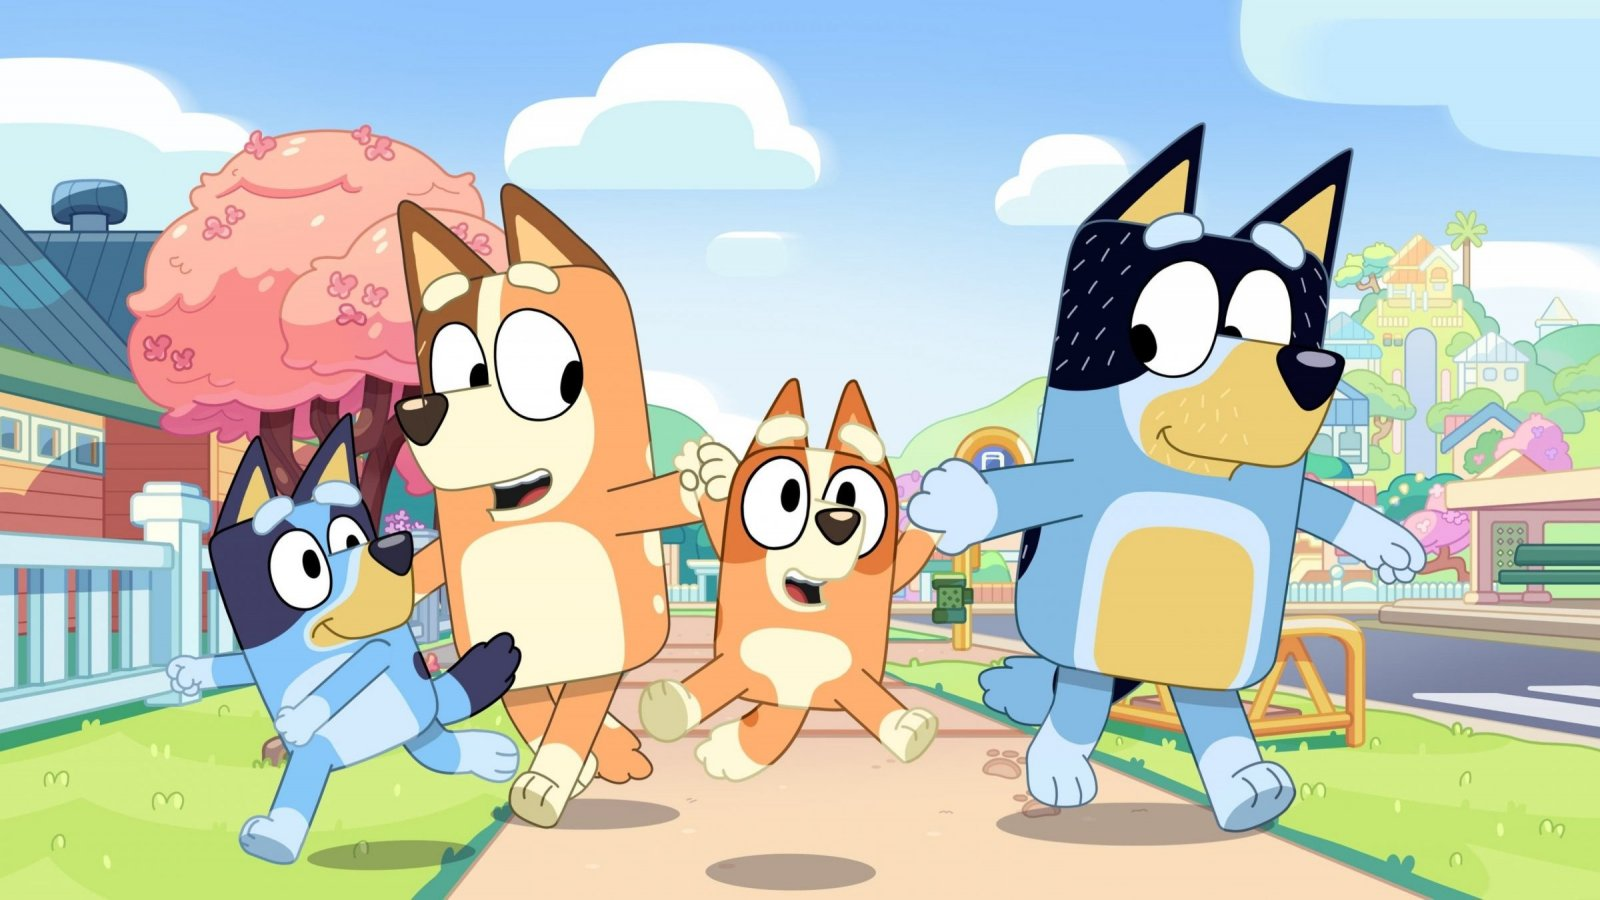 Personajes animados de la serie Bluey caminando alegremente juntos.